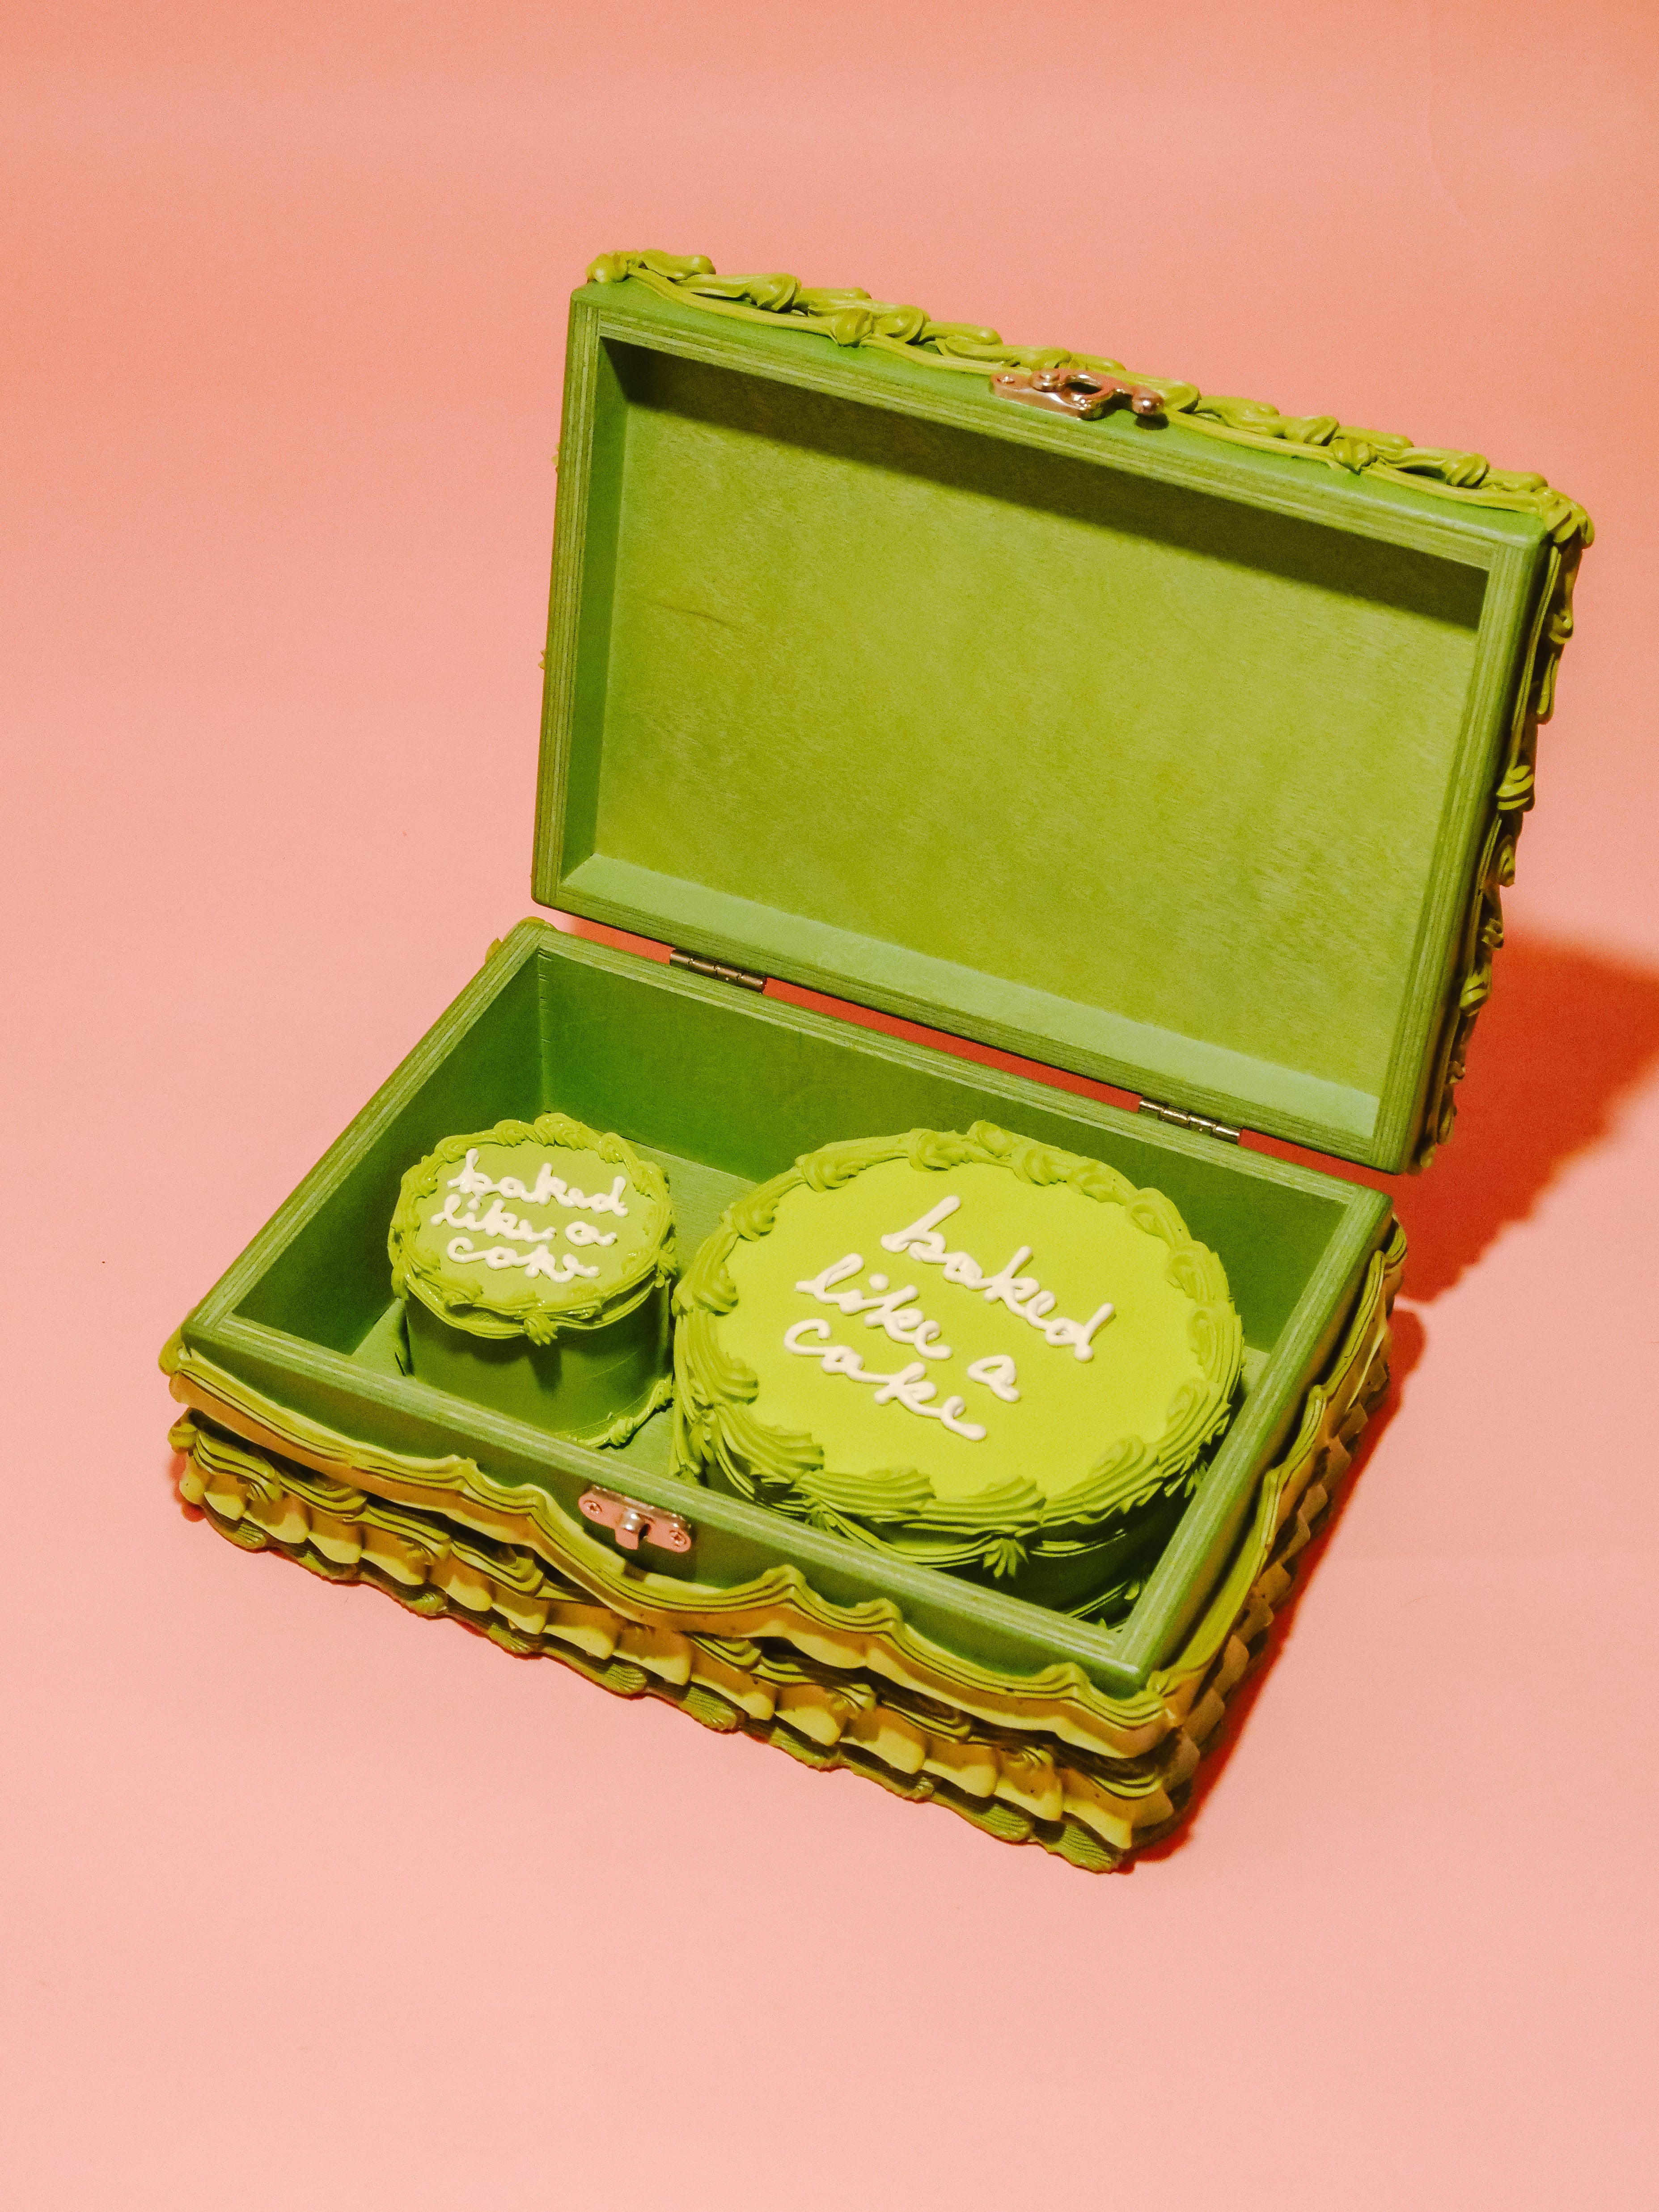 Green “Baked Like A Cake” Stash Box Set